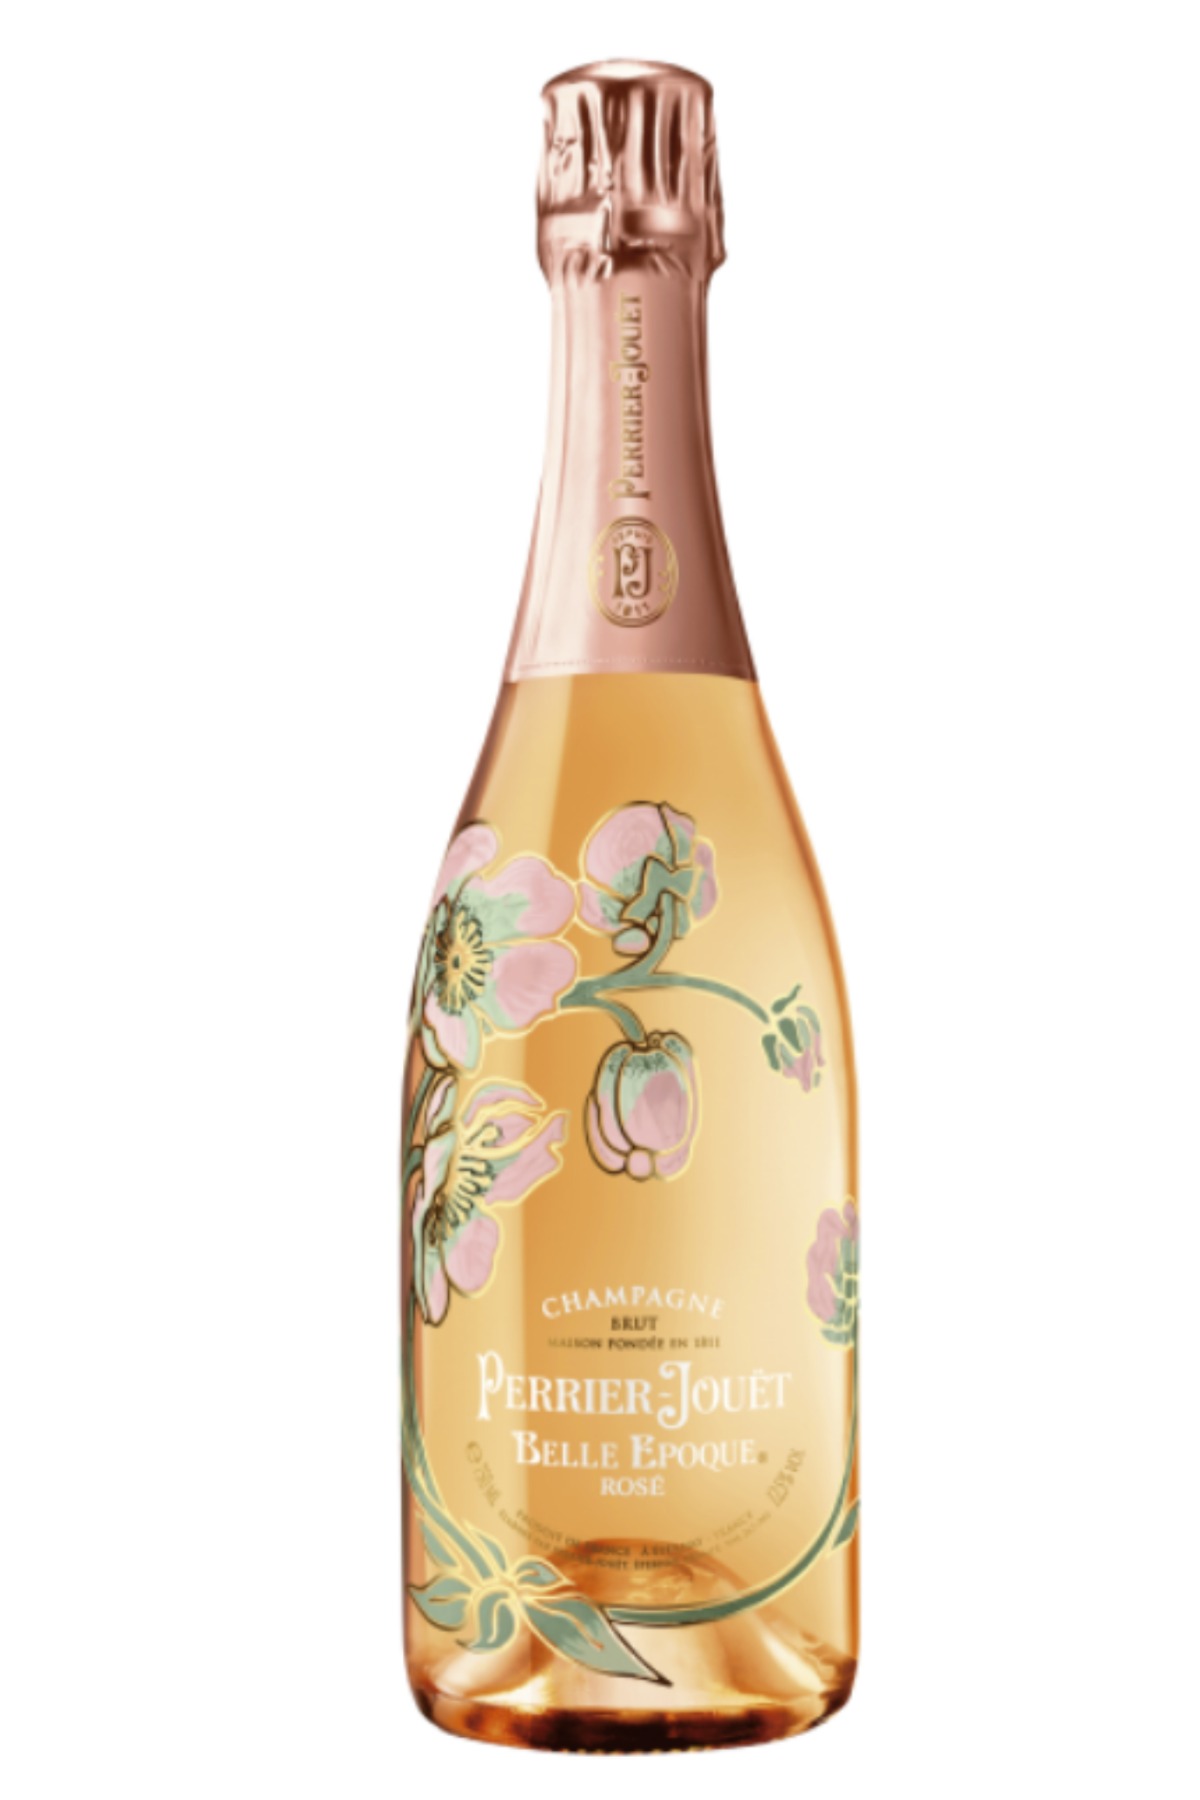 Champagne Belle Epoque Rosè 2012 - Perrier-Jouët